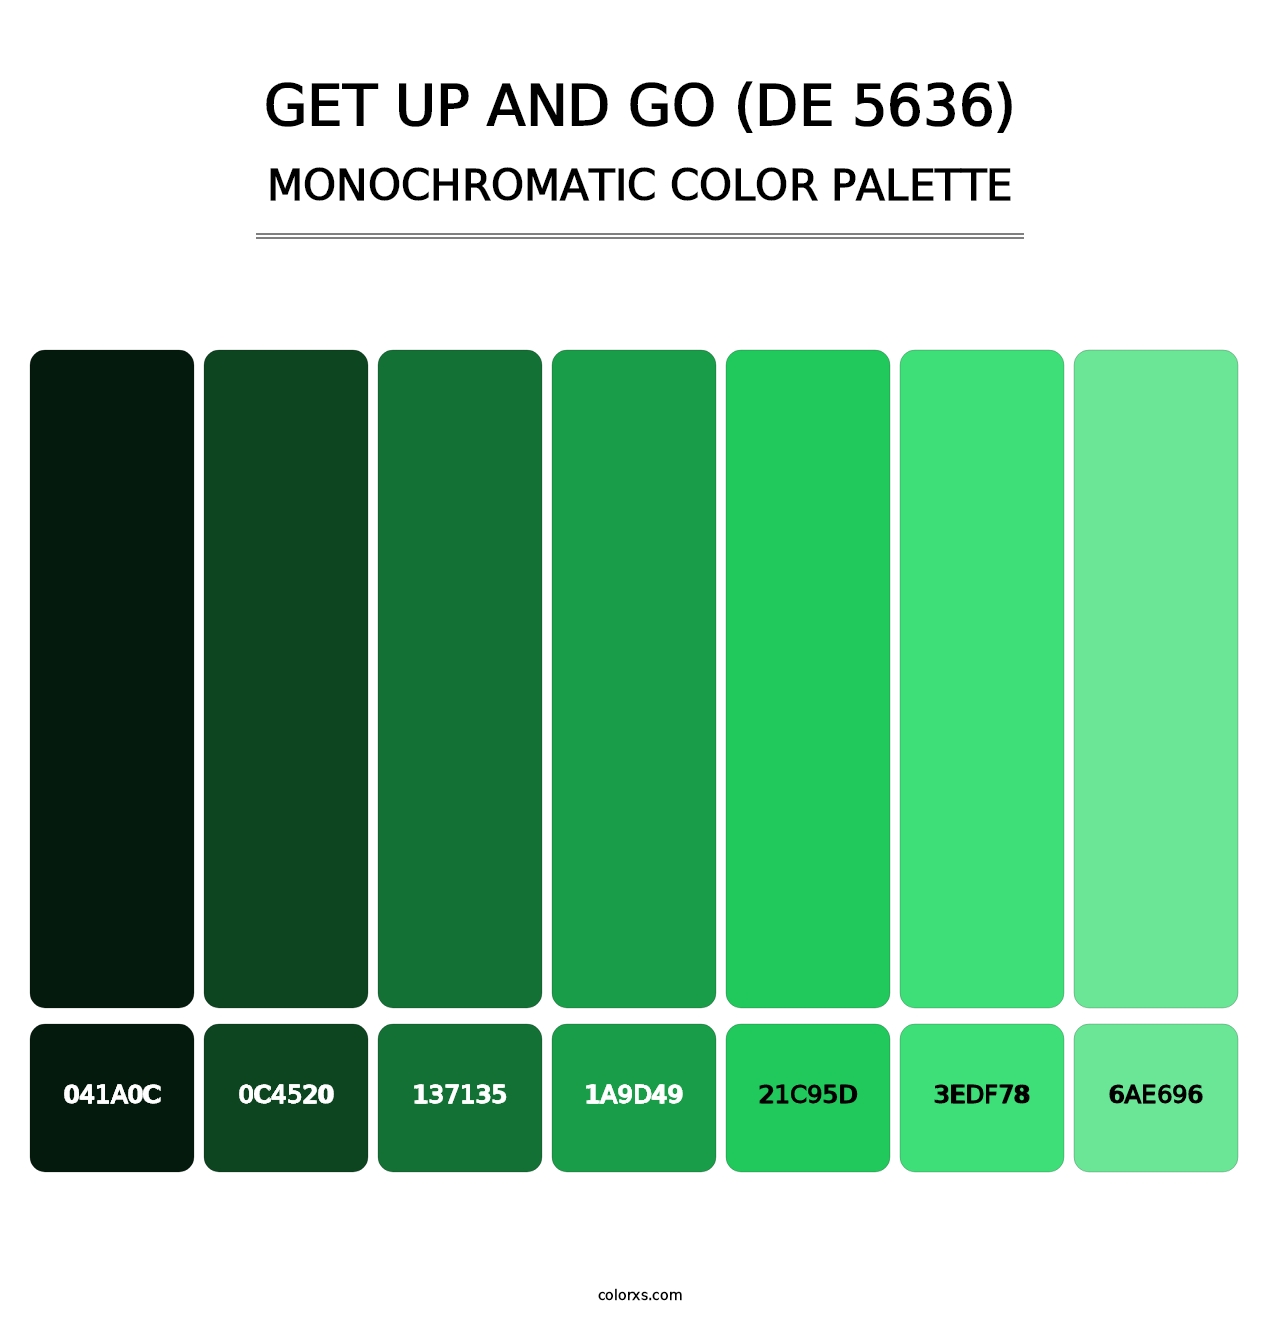 Get Up and Go (DE 5636) - Monochromatic Color Palette